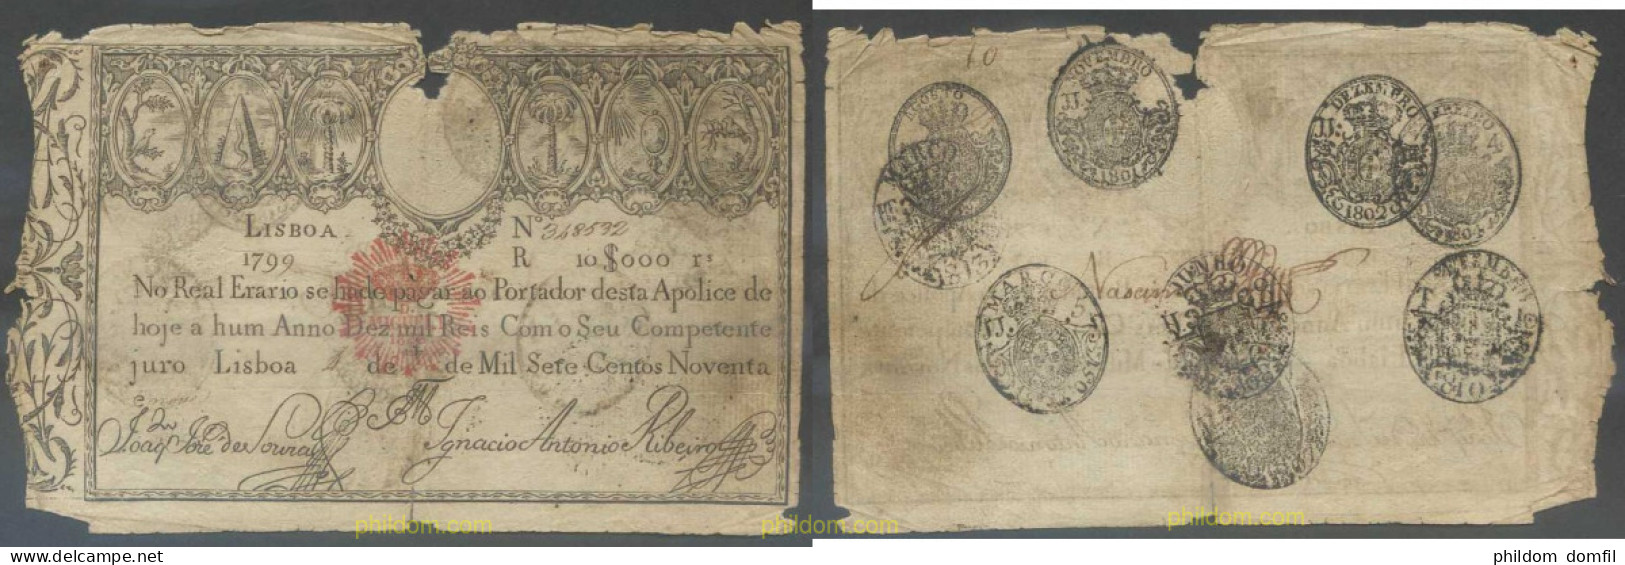 6734 PORTUGAL 1799 PORTUGAL 1799 (1828) 10$000 REIS - Portugal